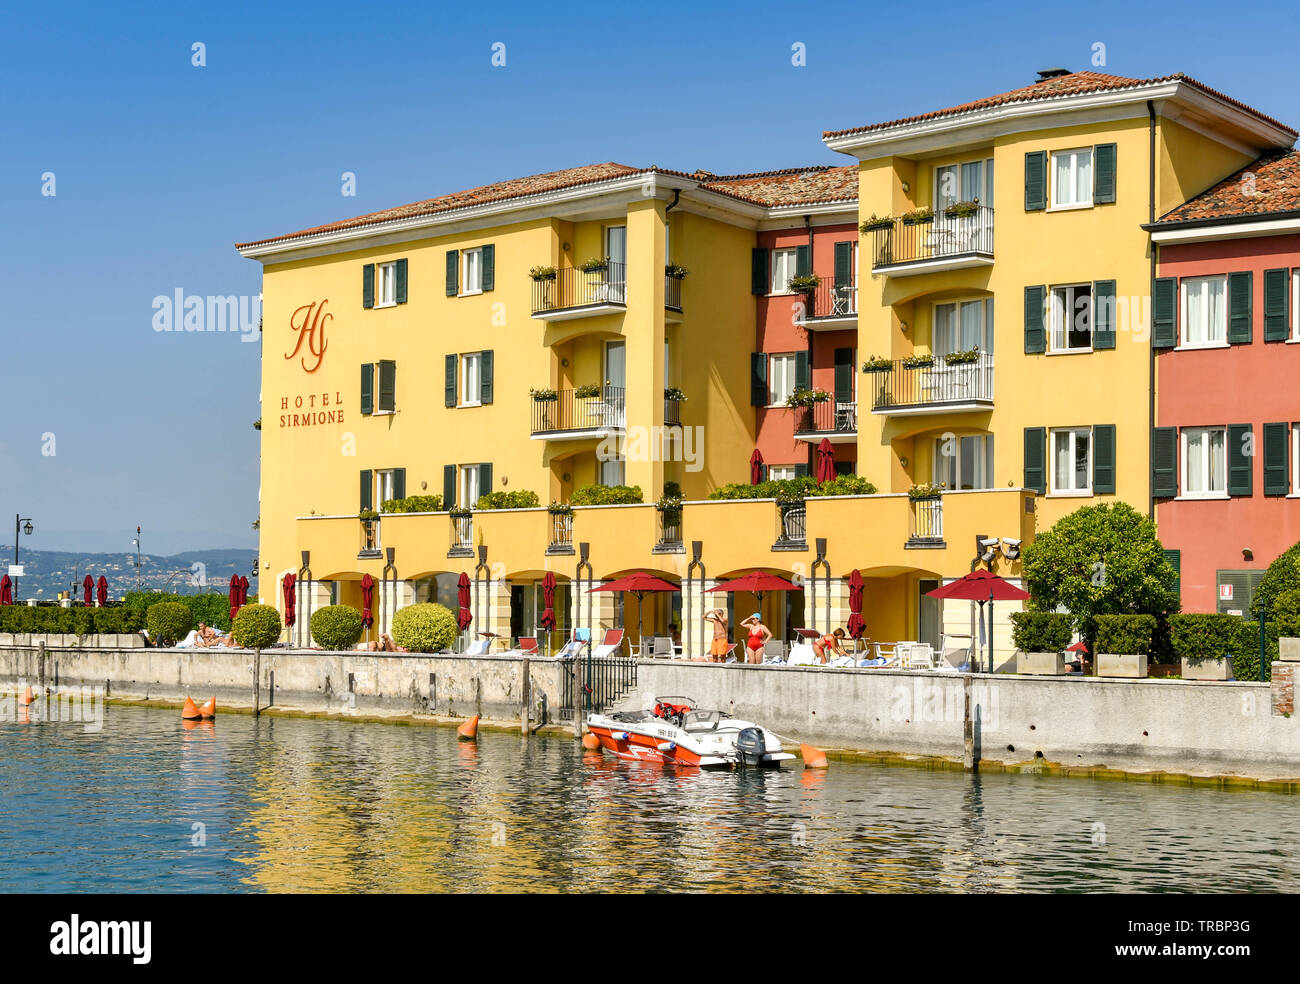 SIRMIONE SUL LAGO DI GARDA, Italia - Settembre 2018: L'Hotel Sirmione sul lago a Sirmione sul Lago di Garda. Foto Stock